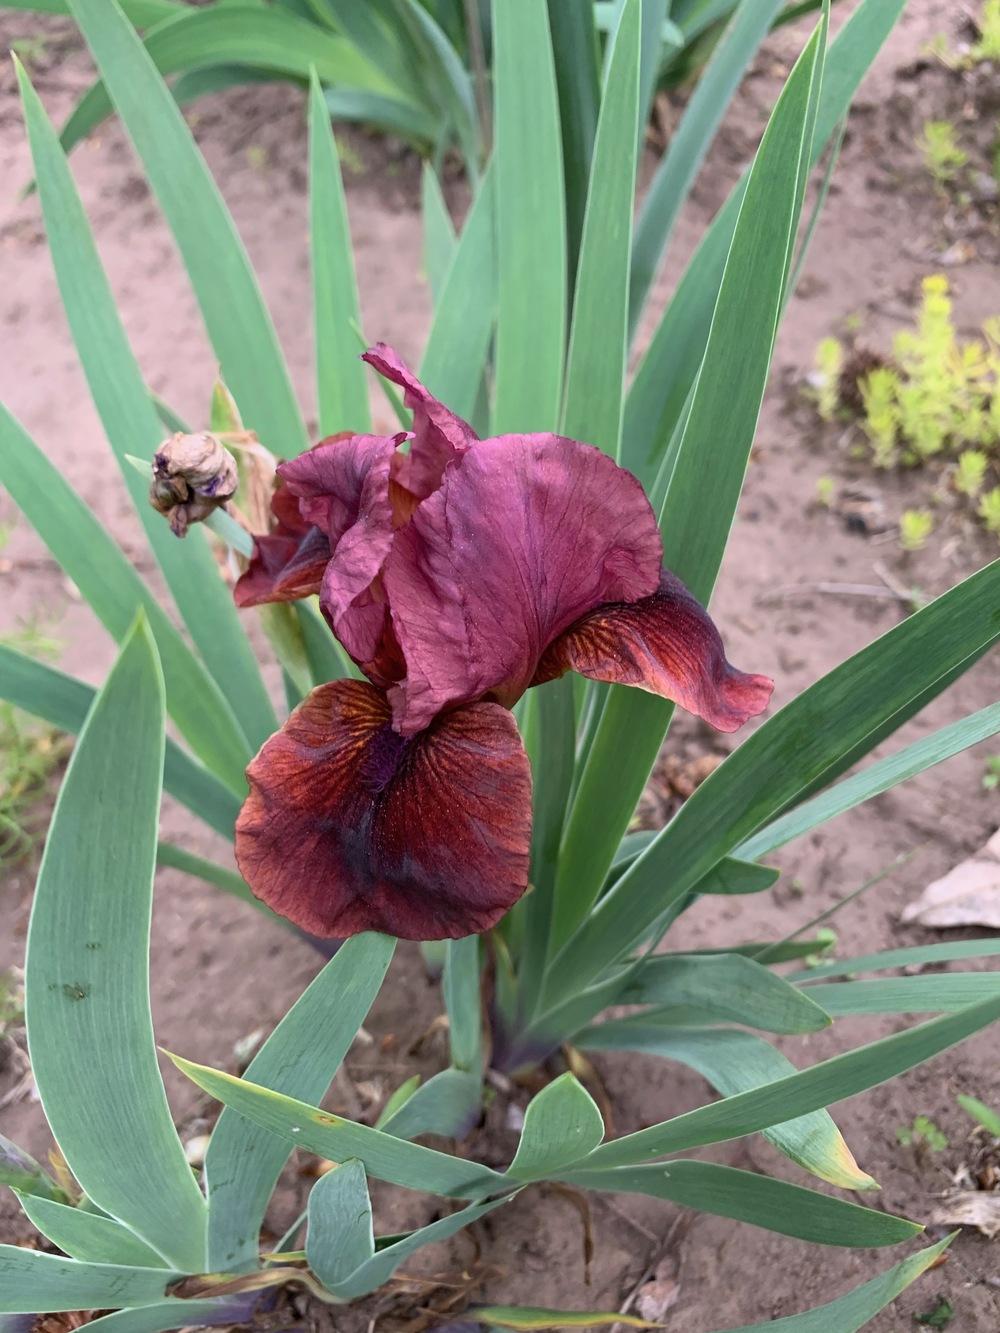 Photo of Arilbred Iris (Iris 'Black Cherry Truffle') uploaded by Winklemanmr